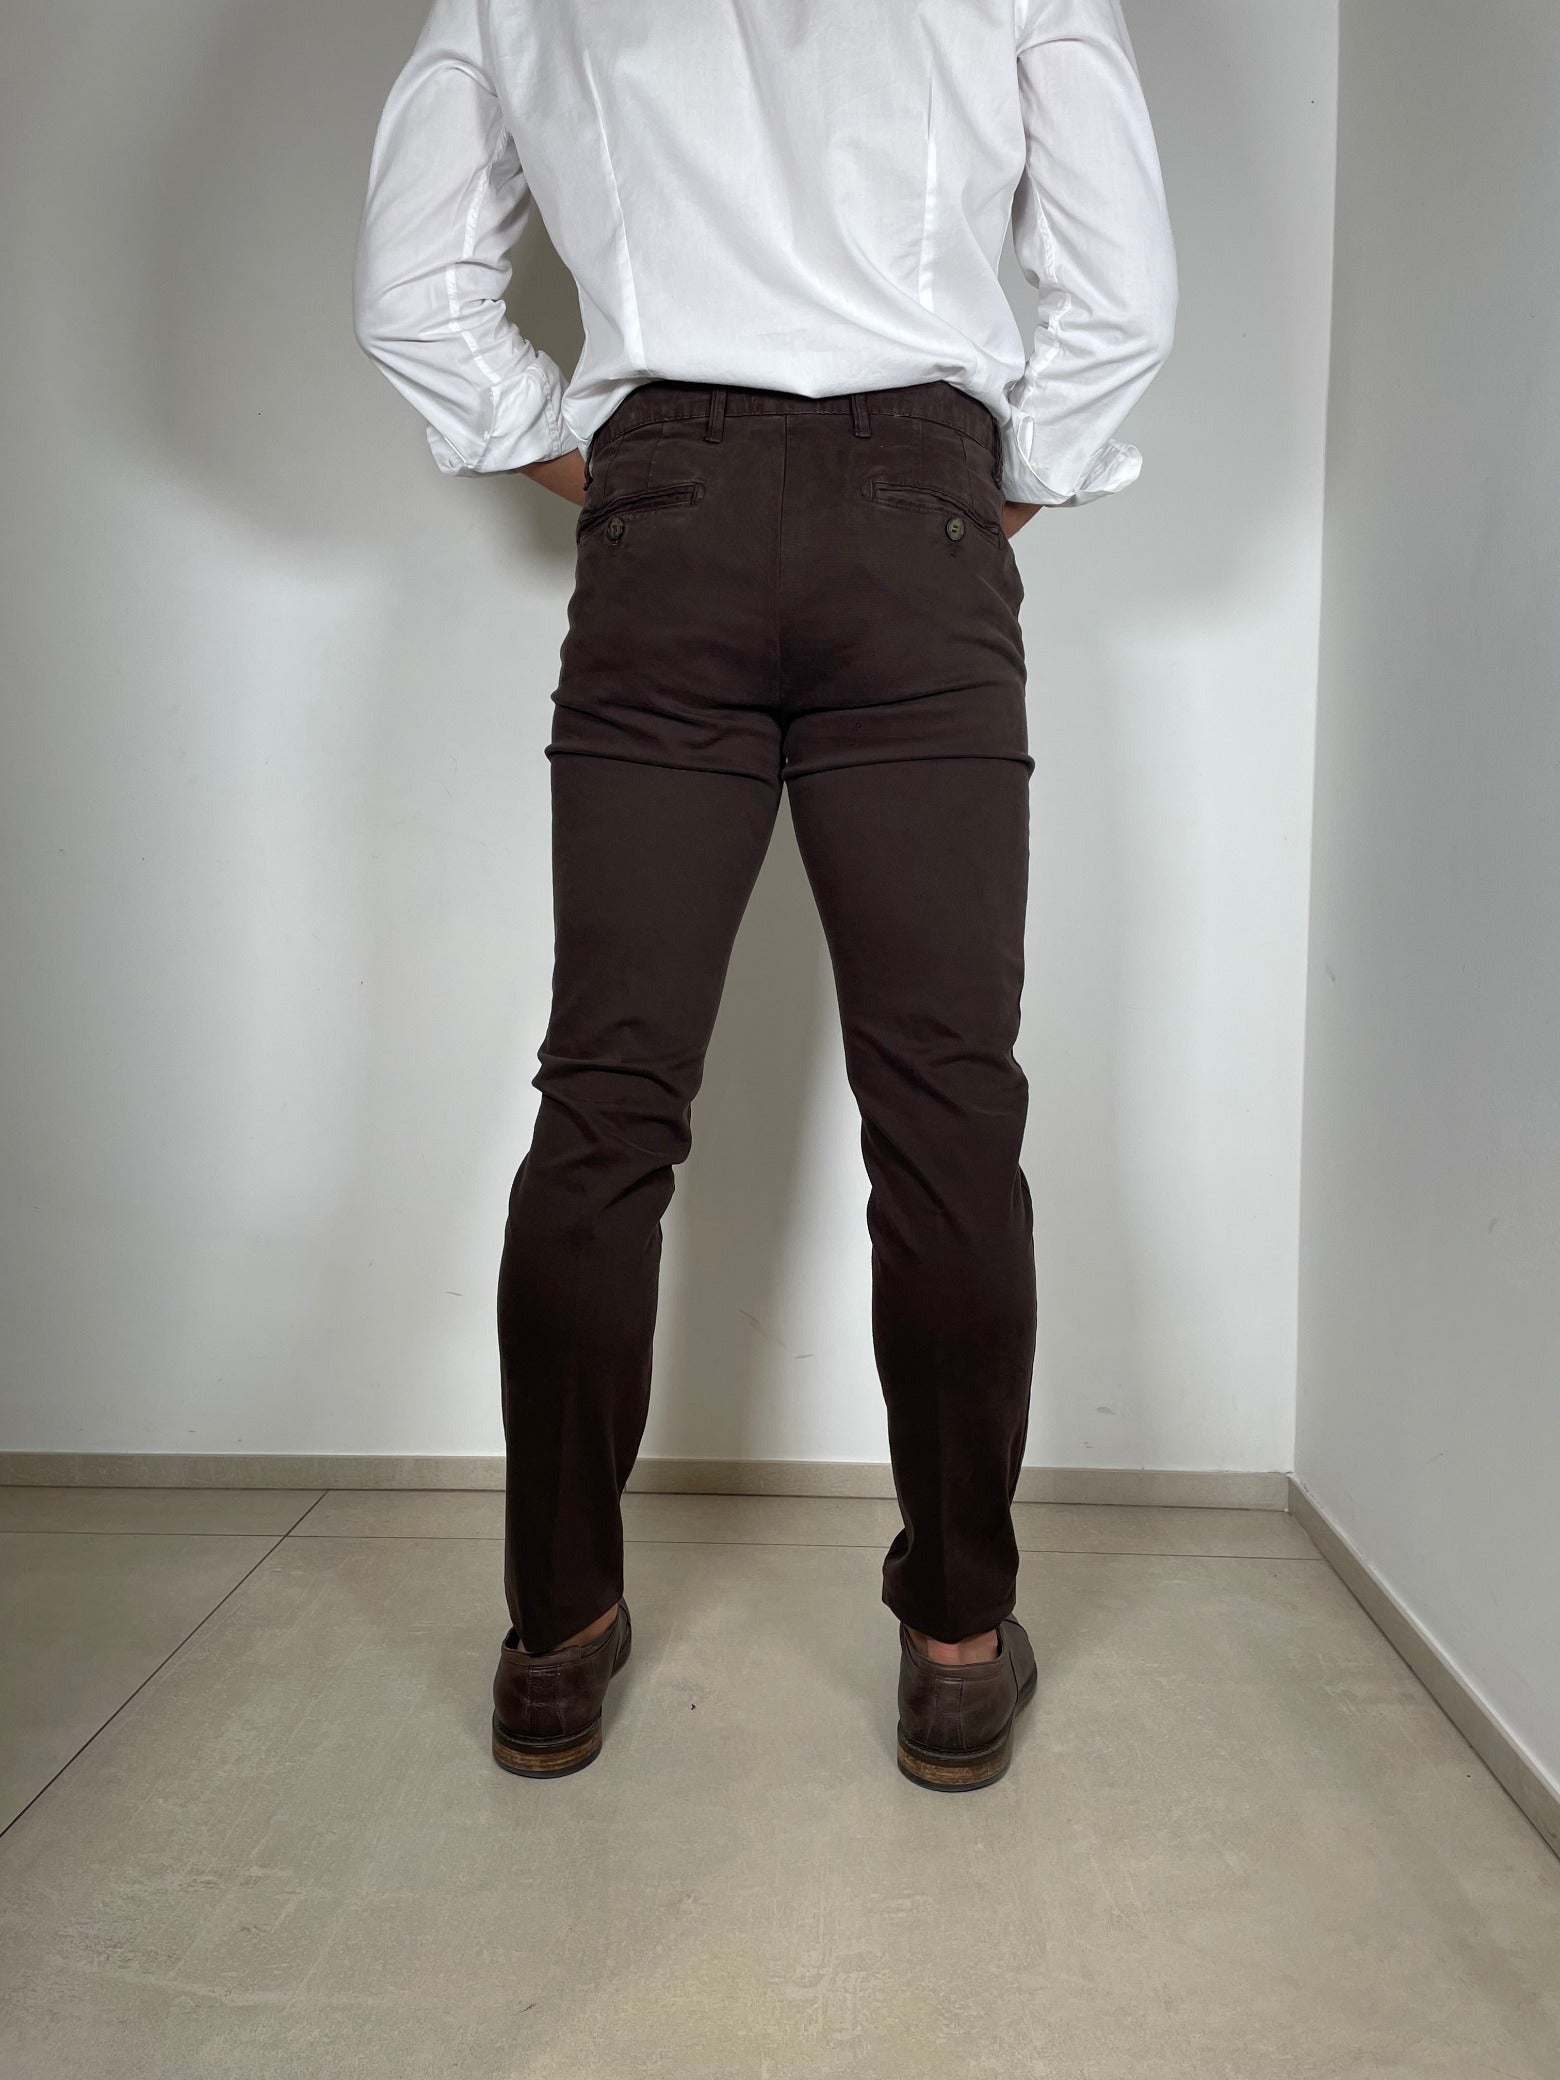 Tom Merritt Pantalone Modello ICON/180